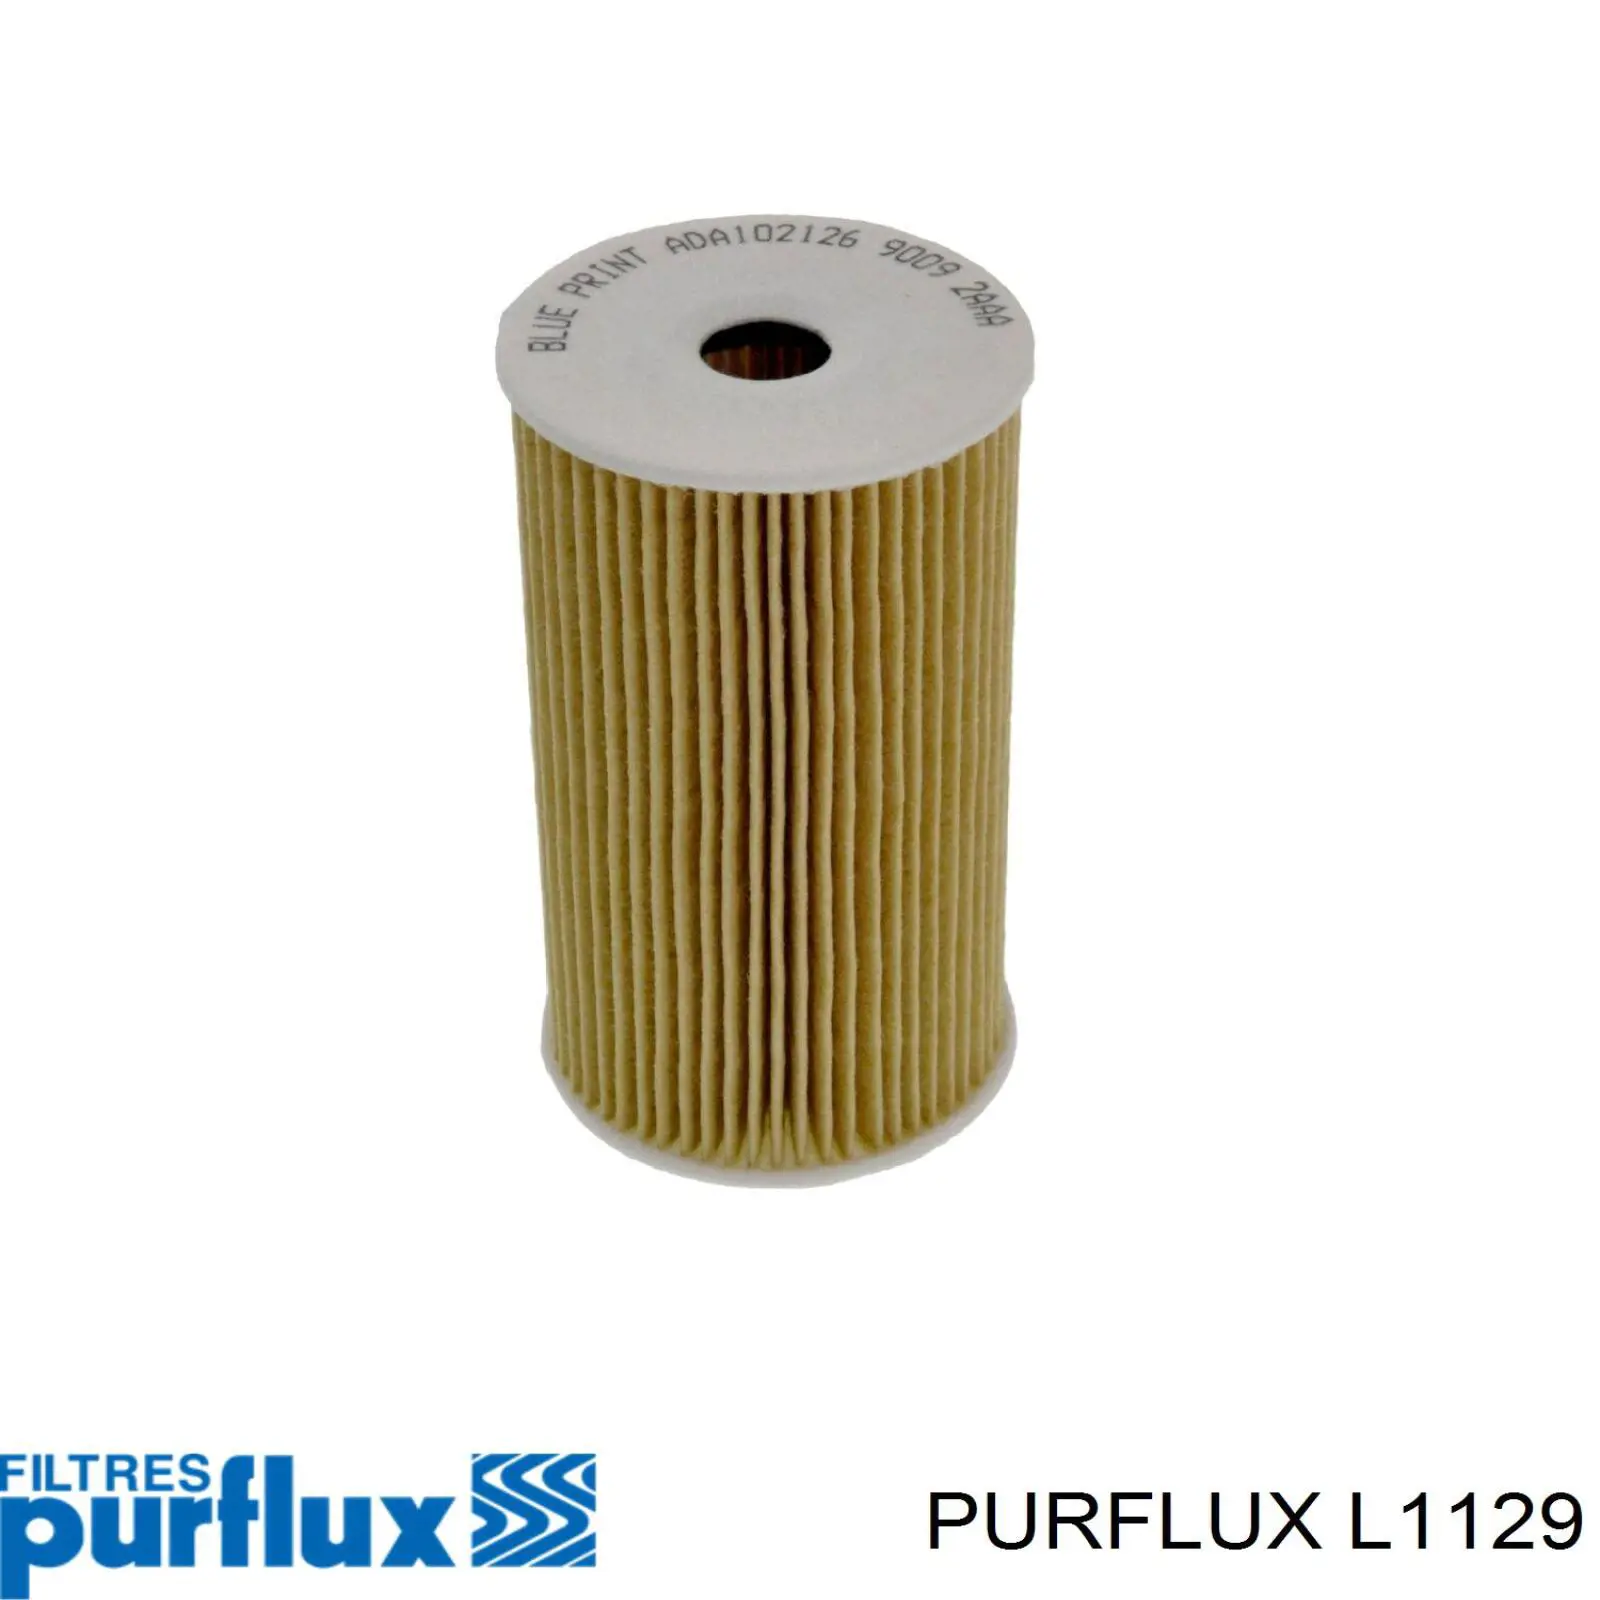 Filtro de aceite L1129 Purflux